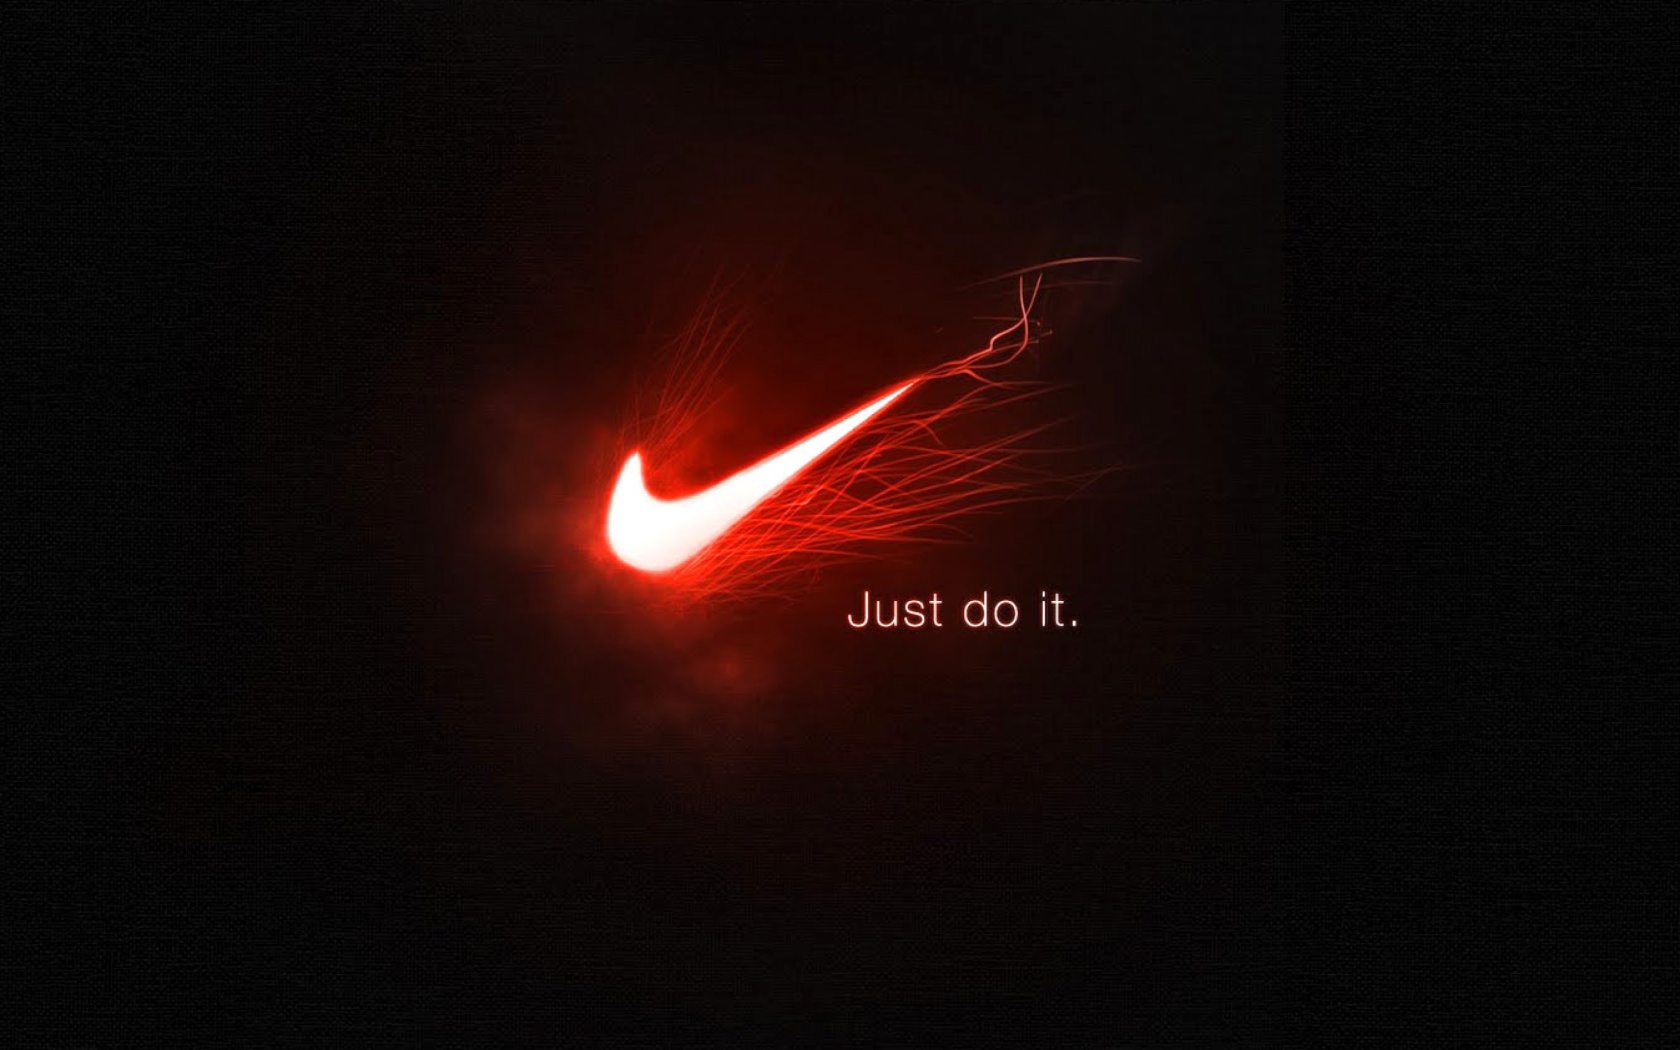 Sfondi Nike Advertising Slogan Just Do It 1680x1050